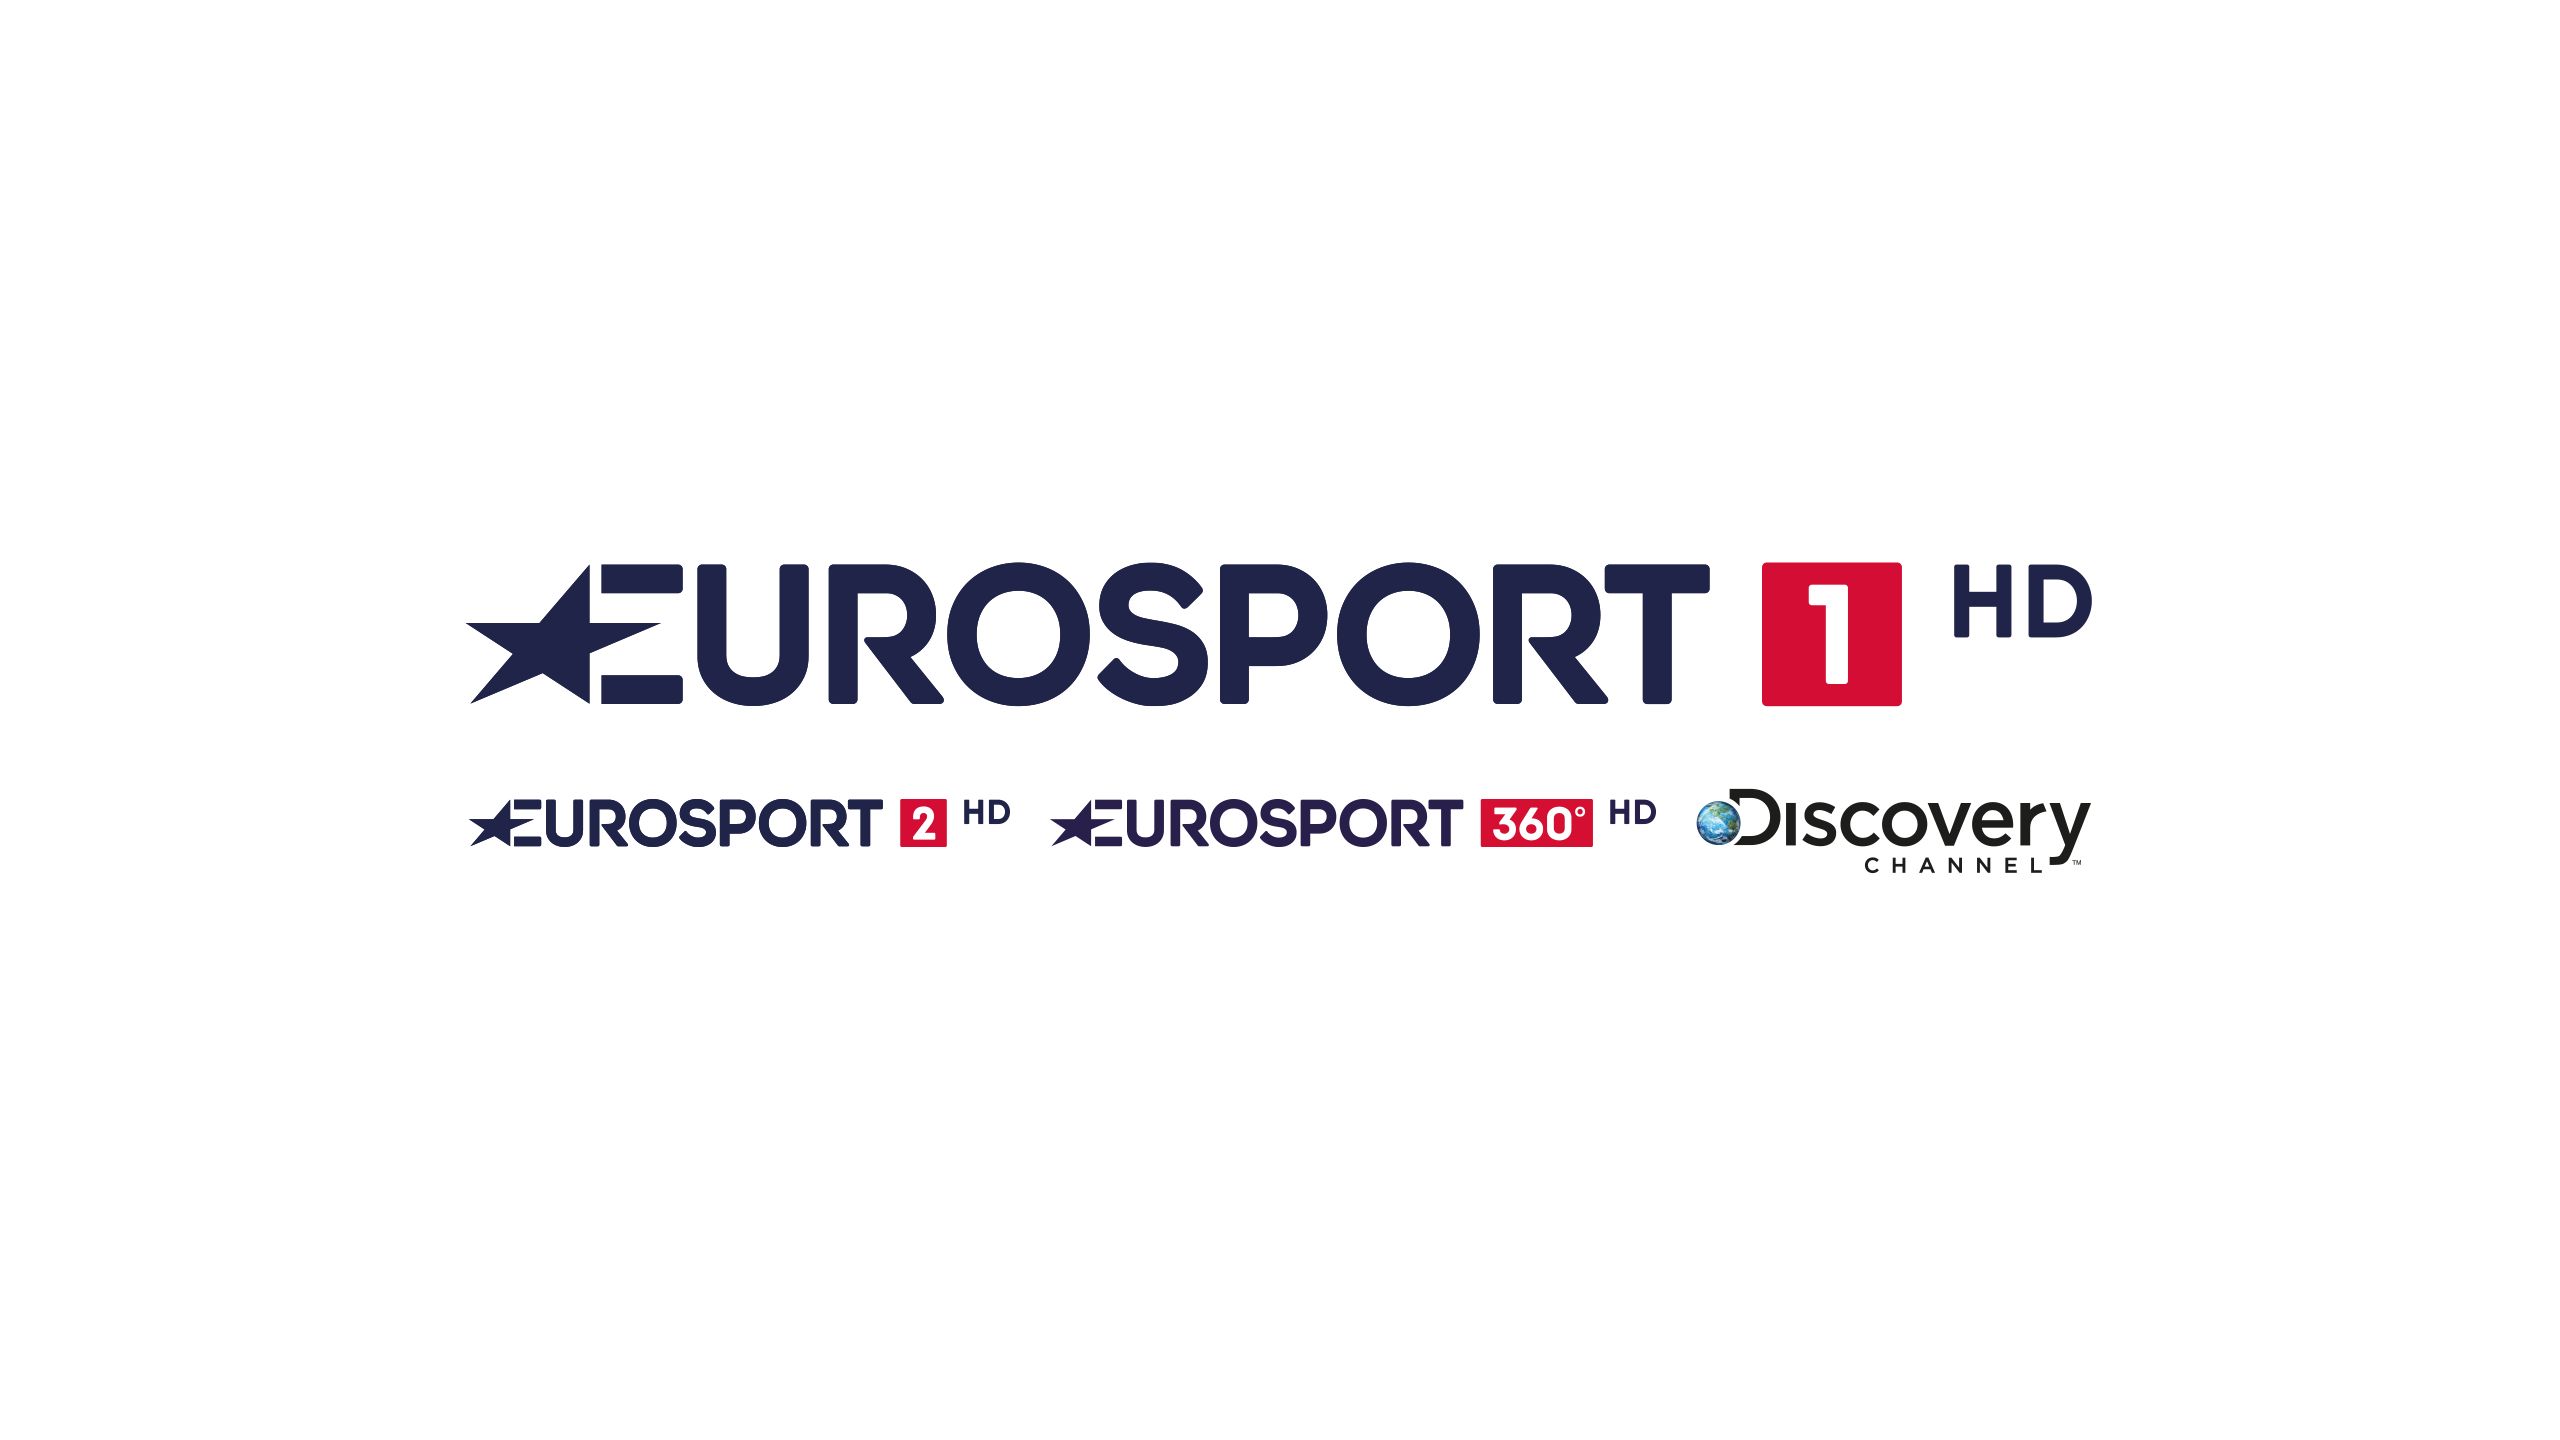 Eurosport 1 HD kann über Unitymedia, HD+ und Vodafone empfangen werden